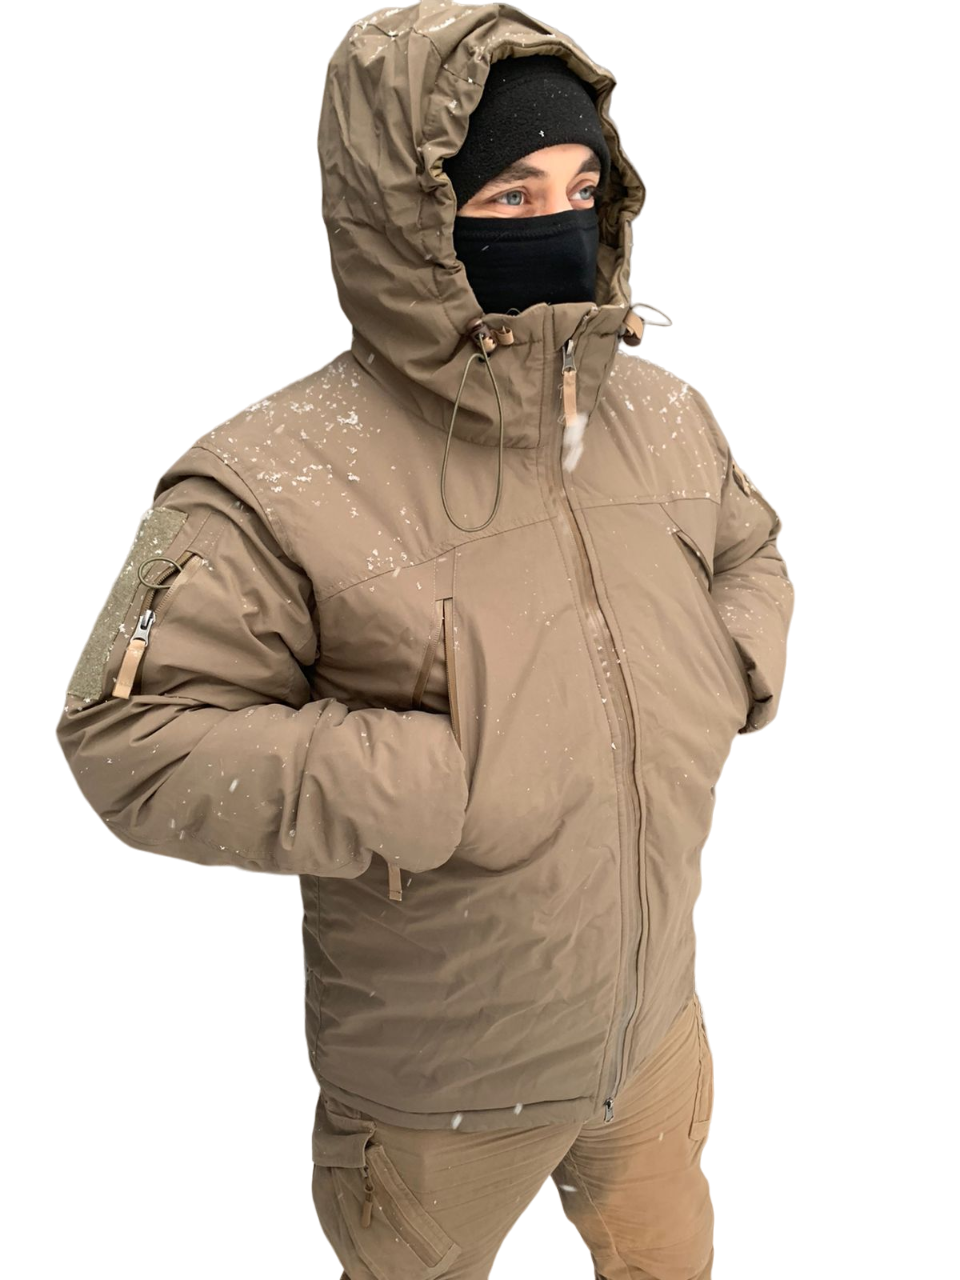 Зимняя куртка мужская Военсклад МСК carinthia бежевая M